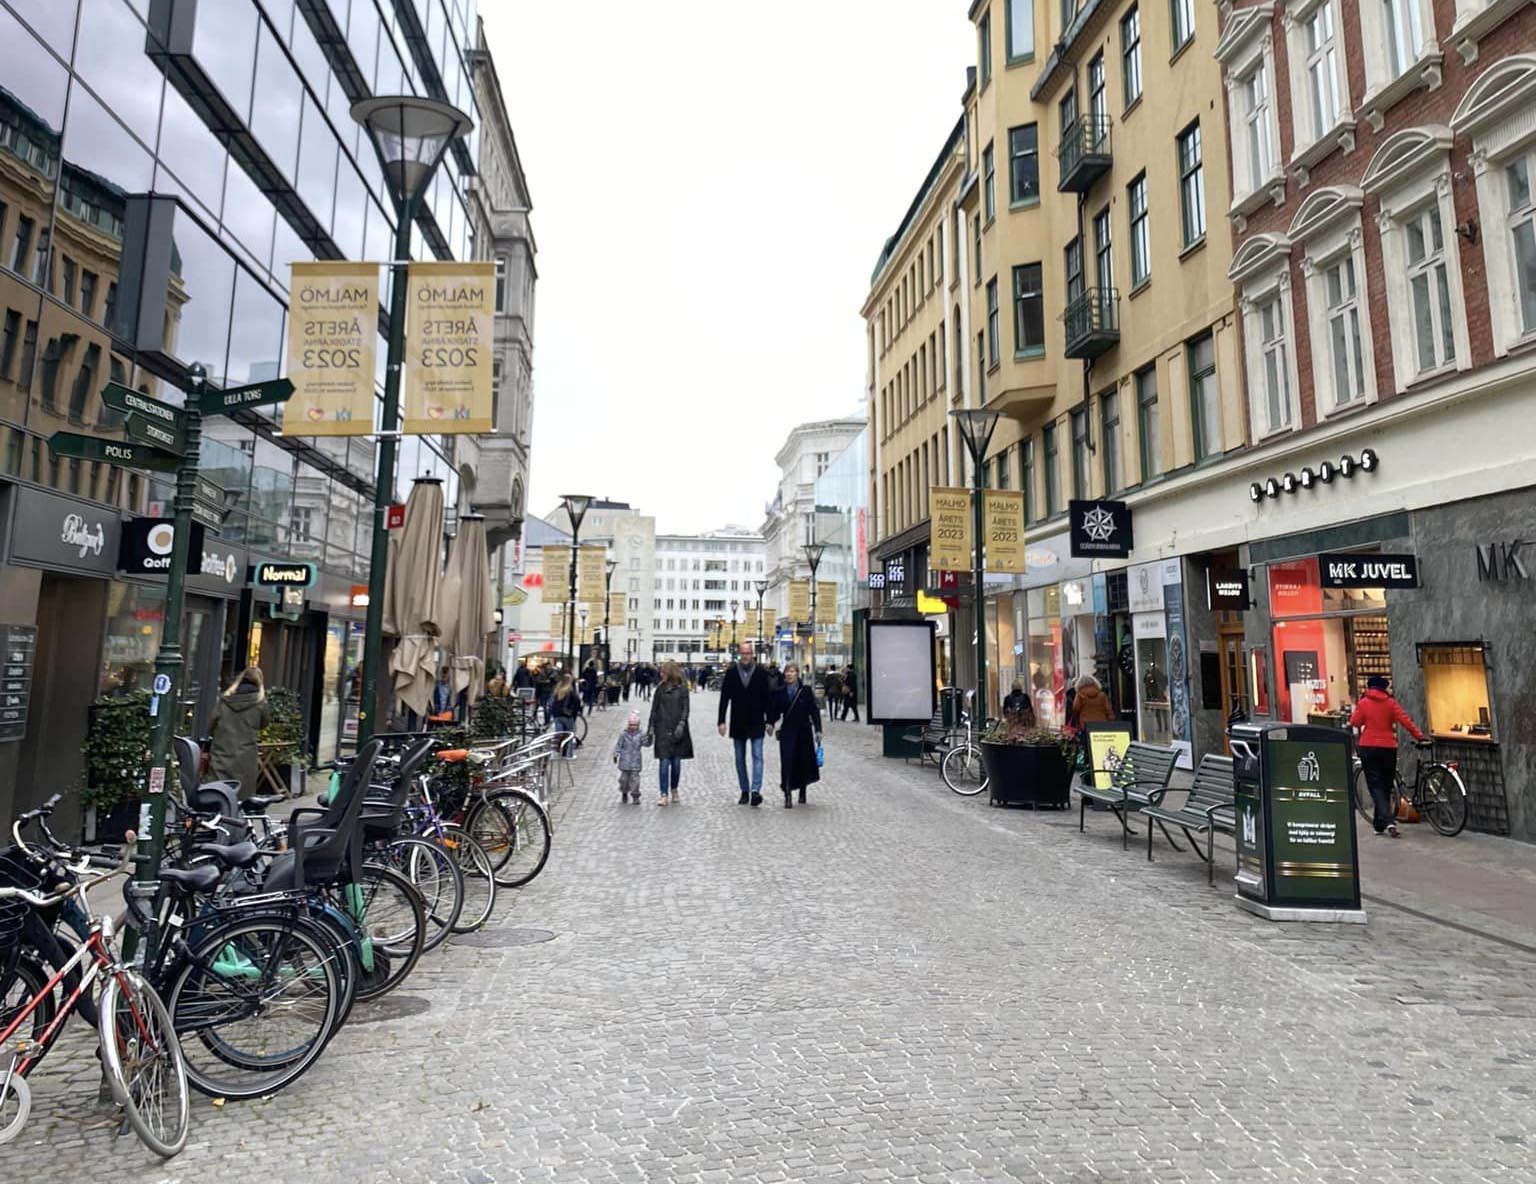 Ngắm nhìn những góc phố cổ kính ở Malmo, Thụy Điển